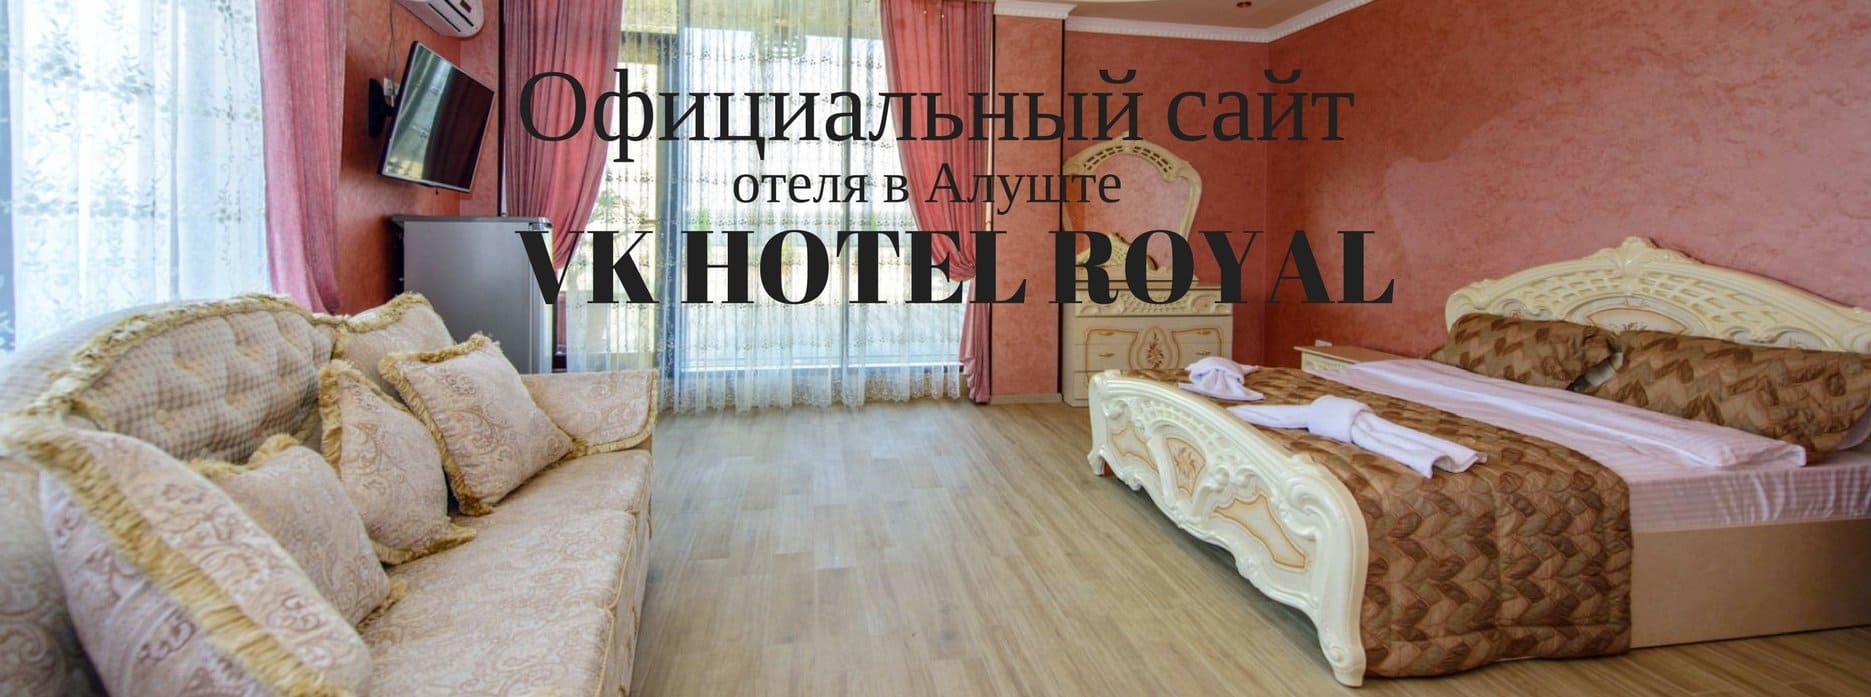 Номер гостиницы в Крыму, ВК-Роял